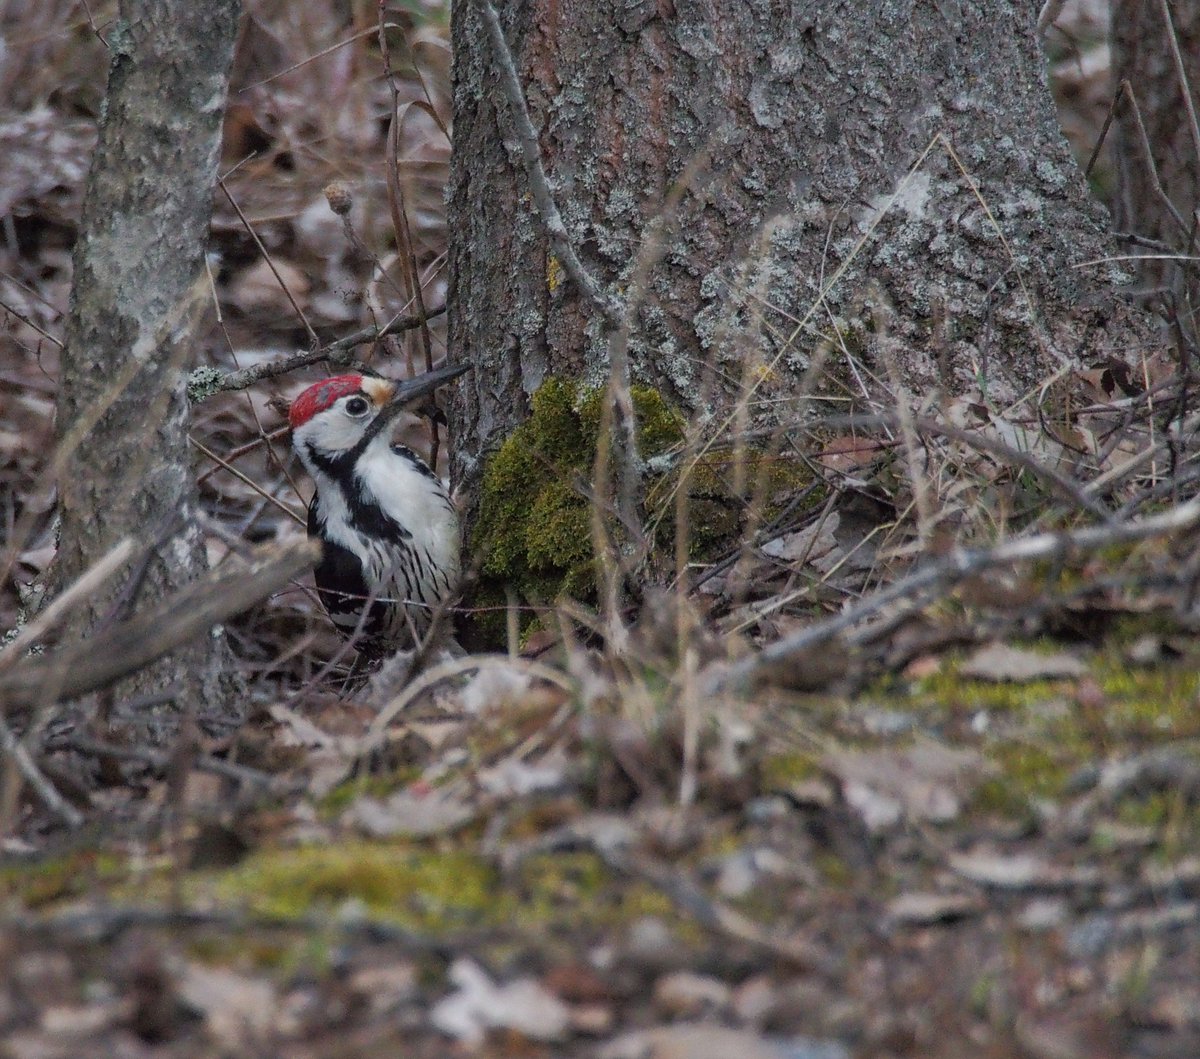 White-backed woodpecker 27.4.2024 in Askisto, Vantaa, Finland.
Valkoselkätikka

#valkoselkätikka #dendrocoposleucotos #whitebackedwoodpecker #bird #birds #birdphotography #birdphoto #birdpics #birdwatching #woodpecker #askisto #vantaa #finland #olympusomdem5 #olympus